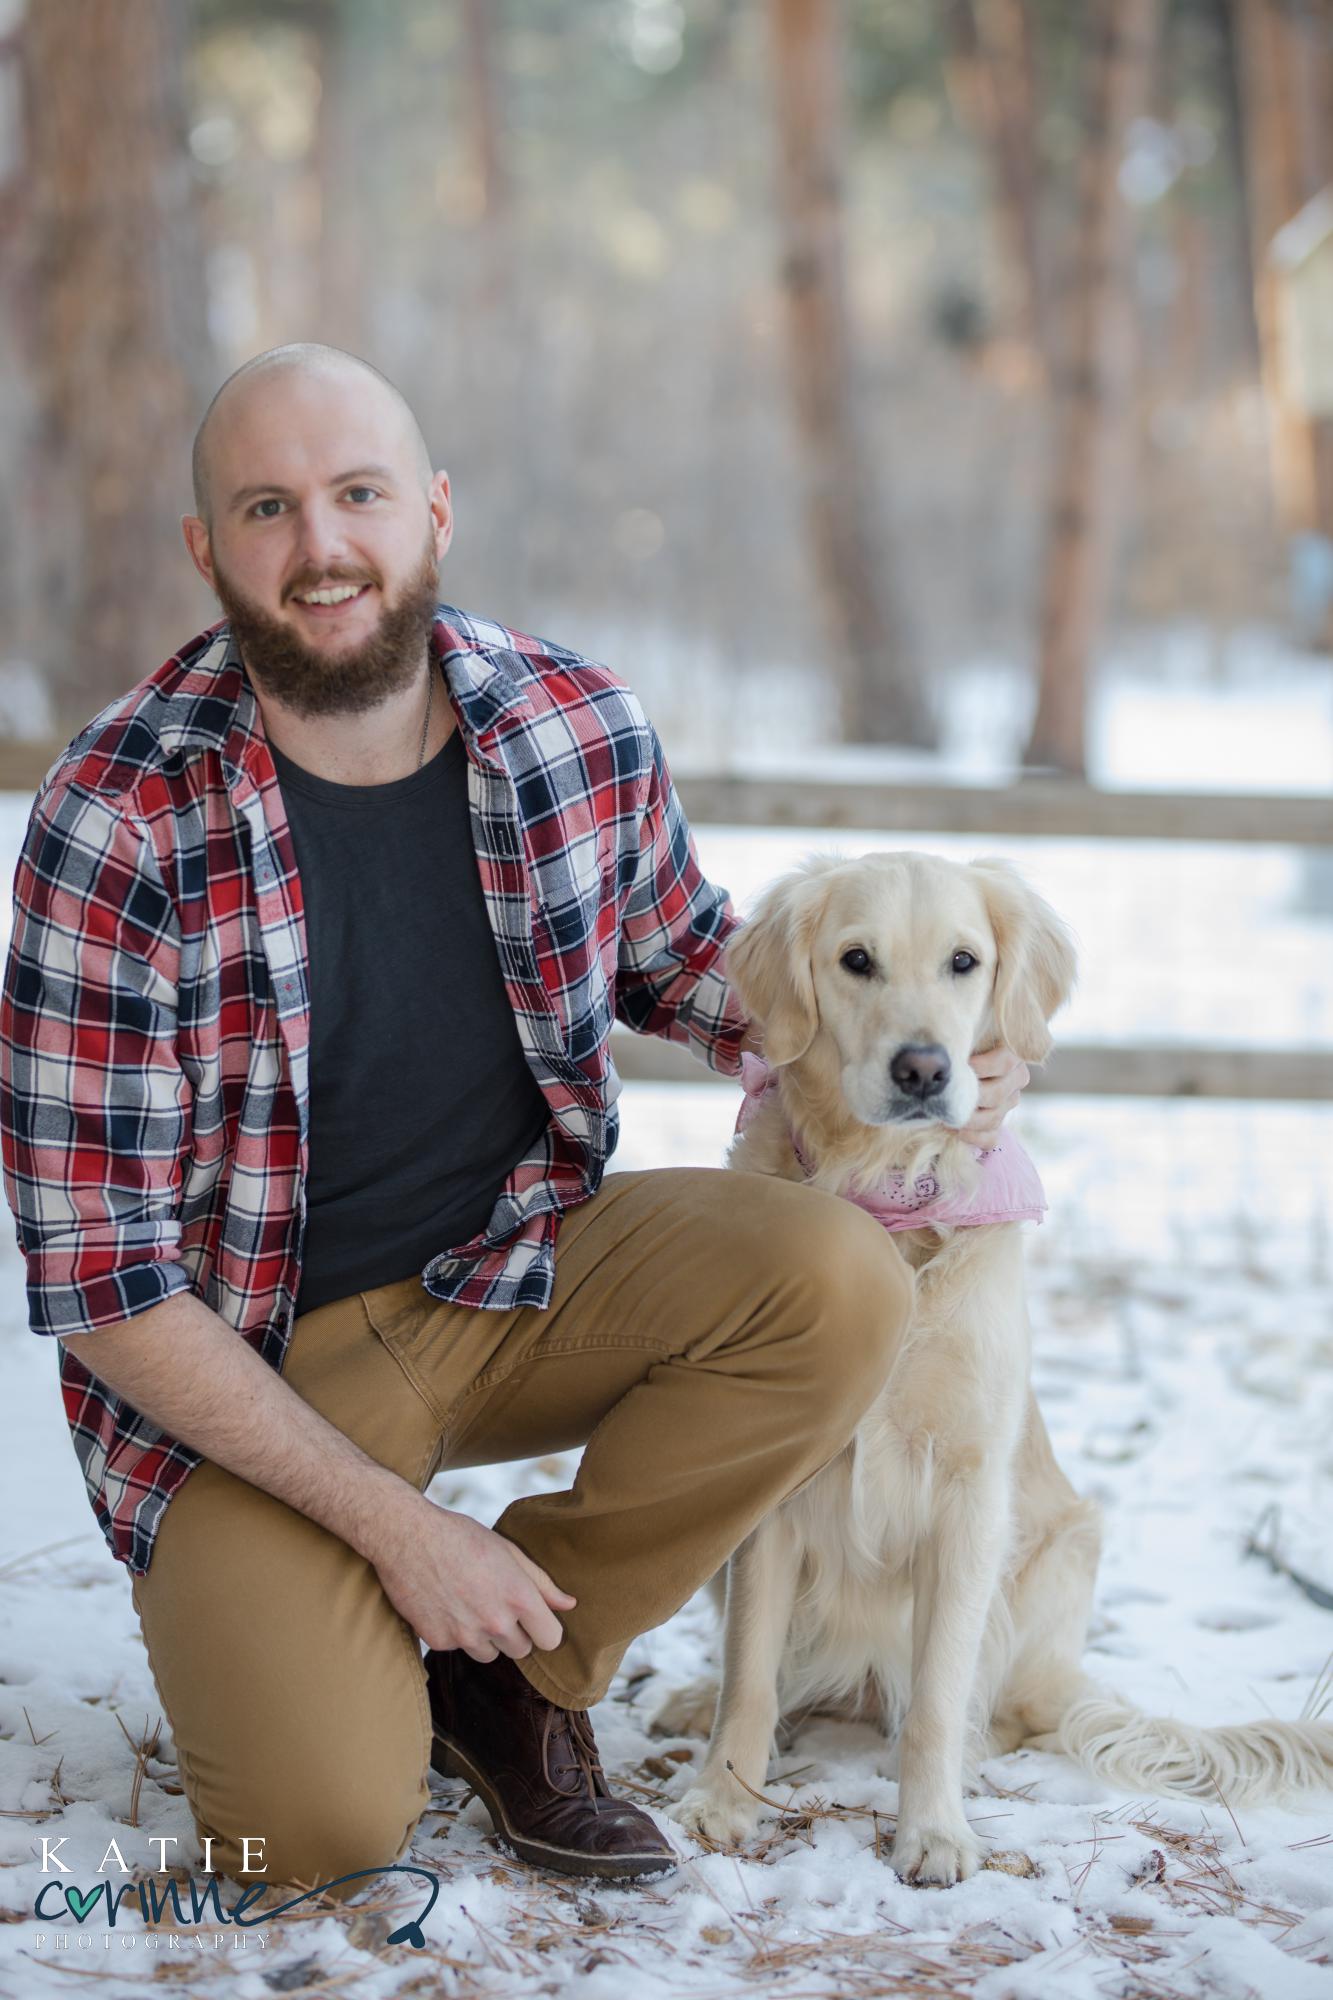 Colorado man poses with dog in Colorado